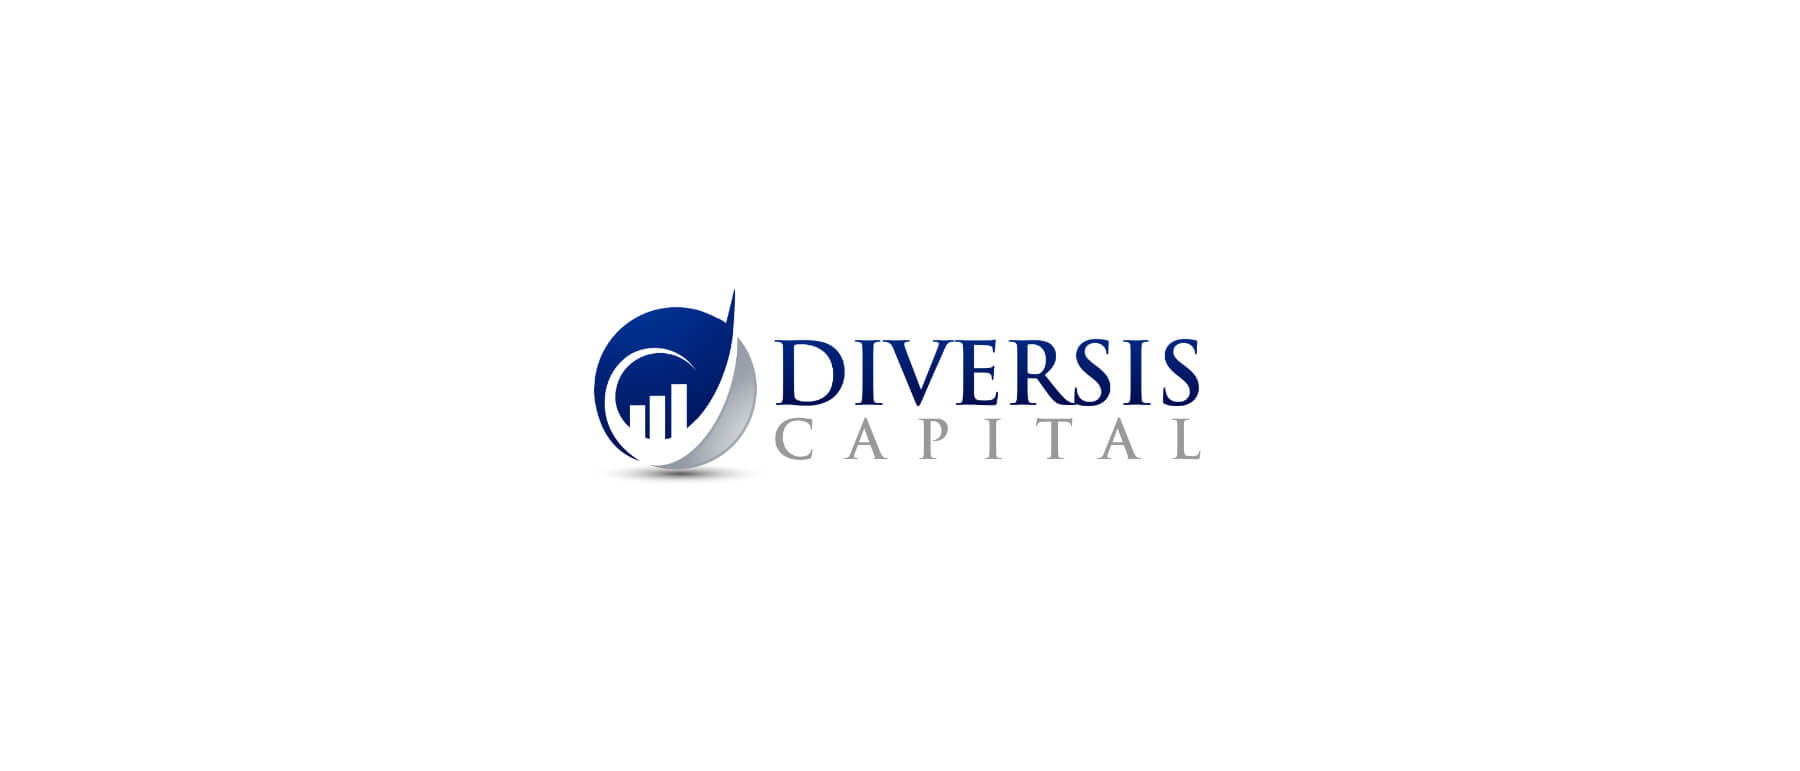 Diversis Capital Client Review